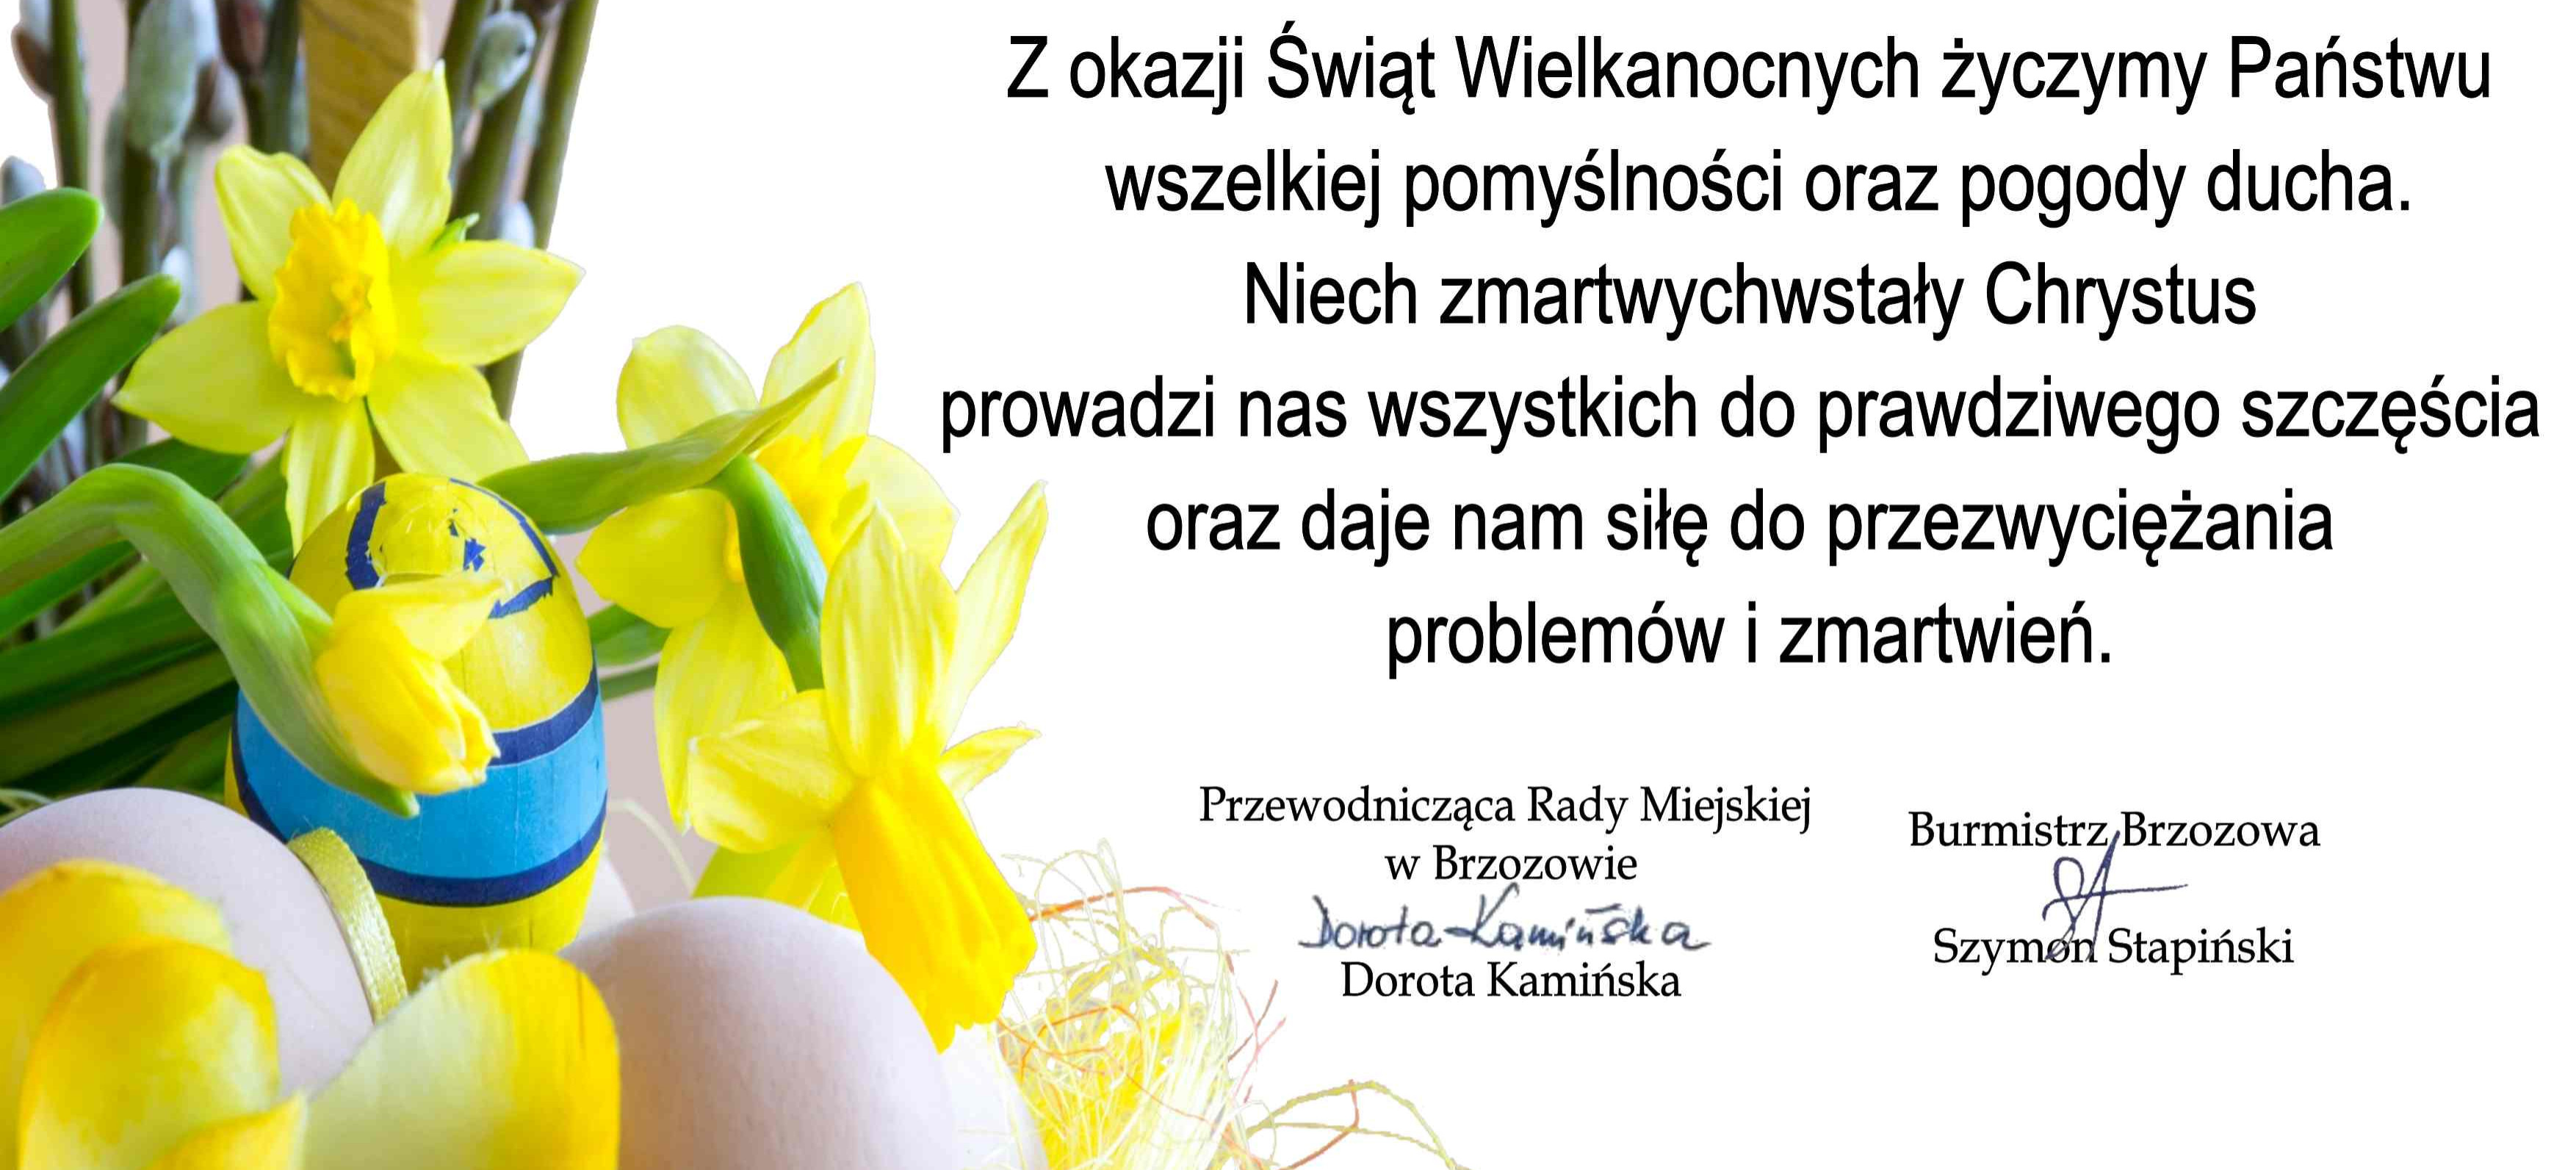 Życzenia wielkanocne władz gminy Brzozów. „Niech zmartwychwstały Chrystus prowadzi do szczęścia!”